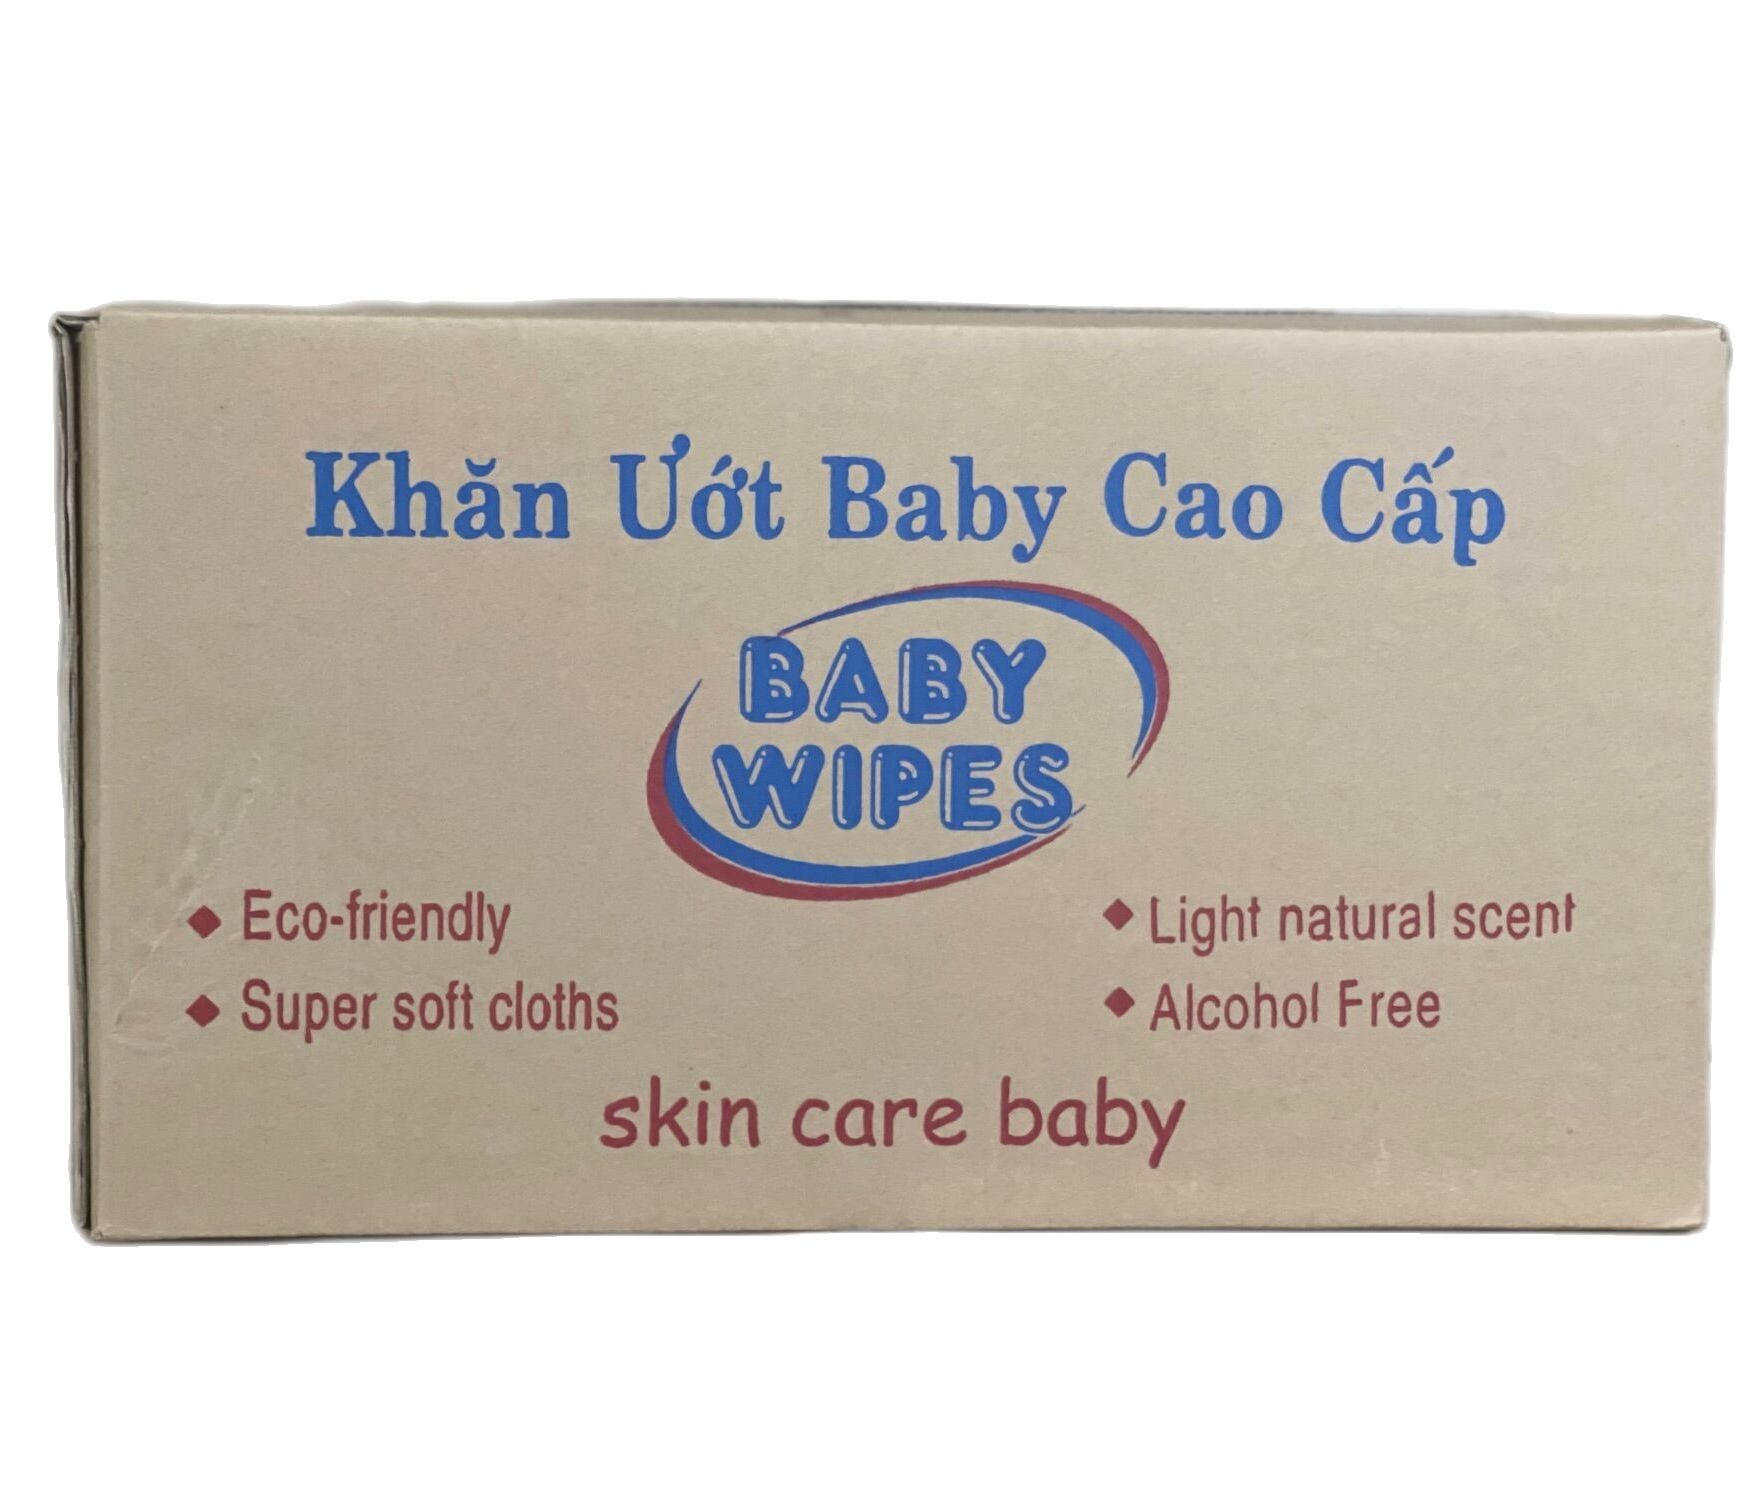 Giá Sỉ 1 thùng khăn giấy ướt em bé baby wiper 80gr  50 cục - An toàn cho bé